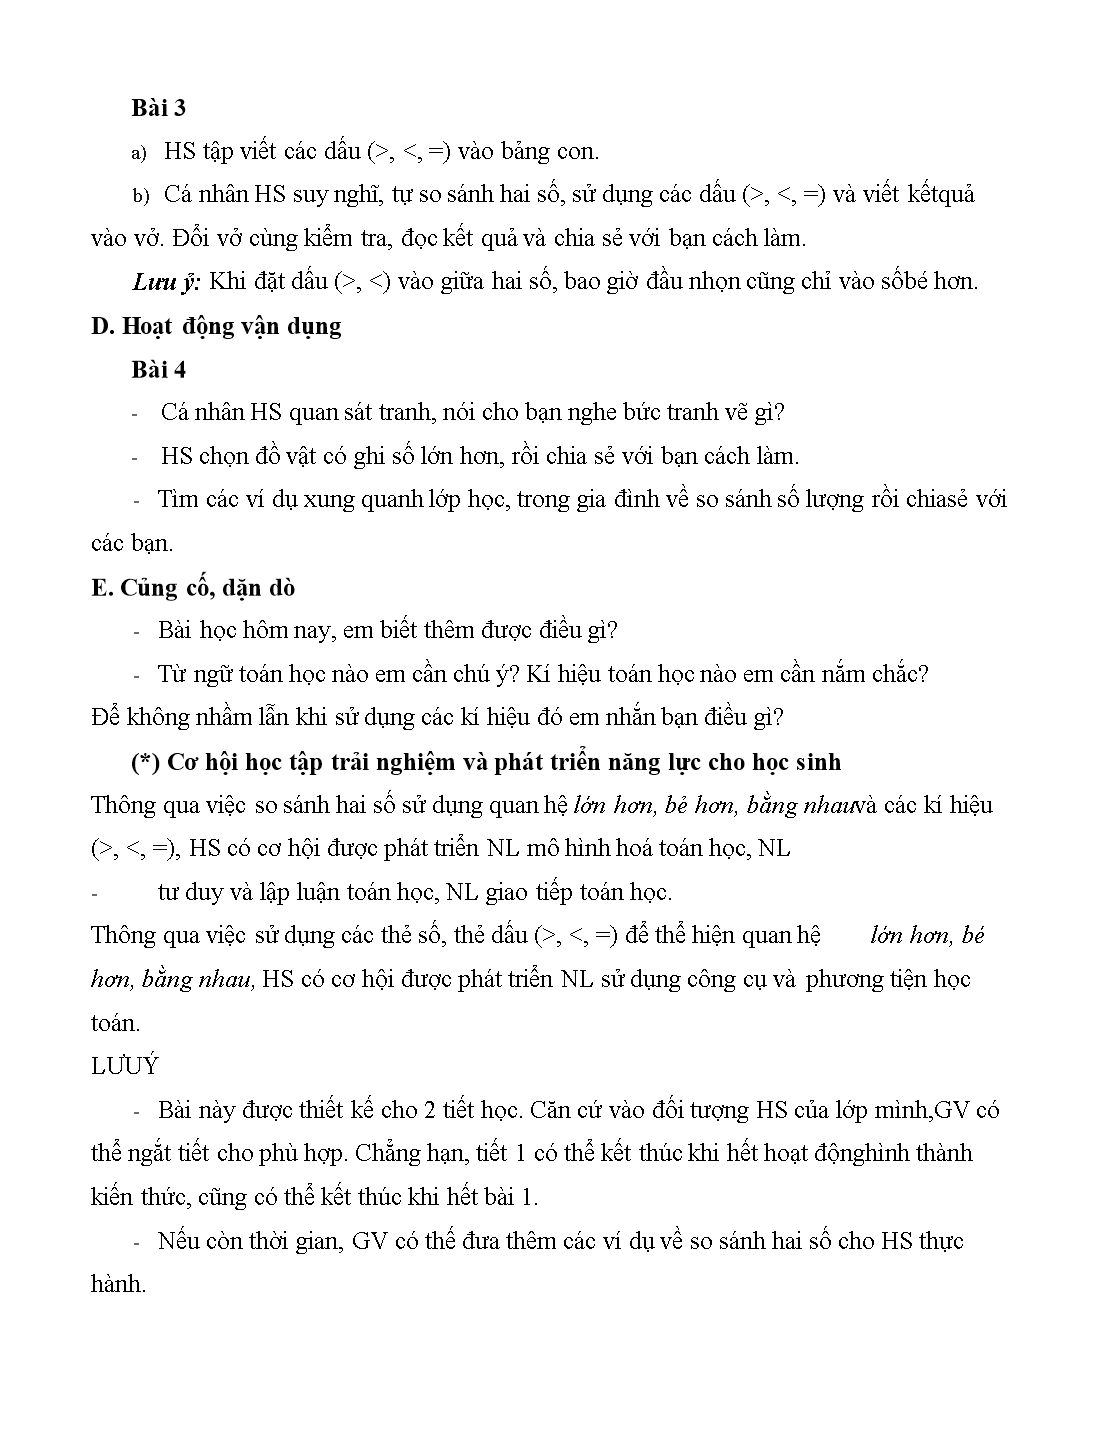 Giáo án môn Toán Lớp 1 (Cánh diều) - Bài 10: Lớn hơn, dấu > bé hơn, dấu < bằng nhau, dấu = trang 3